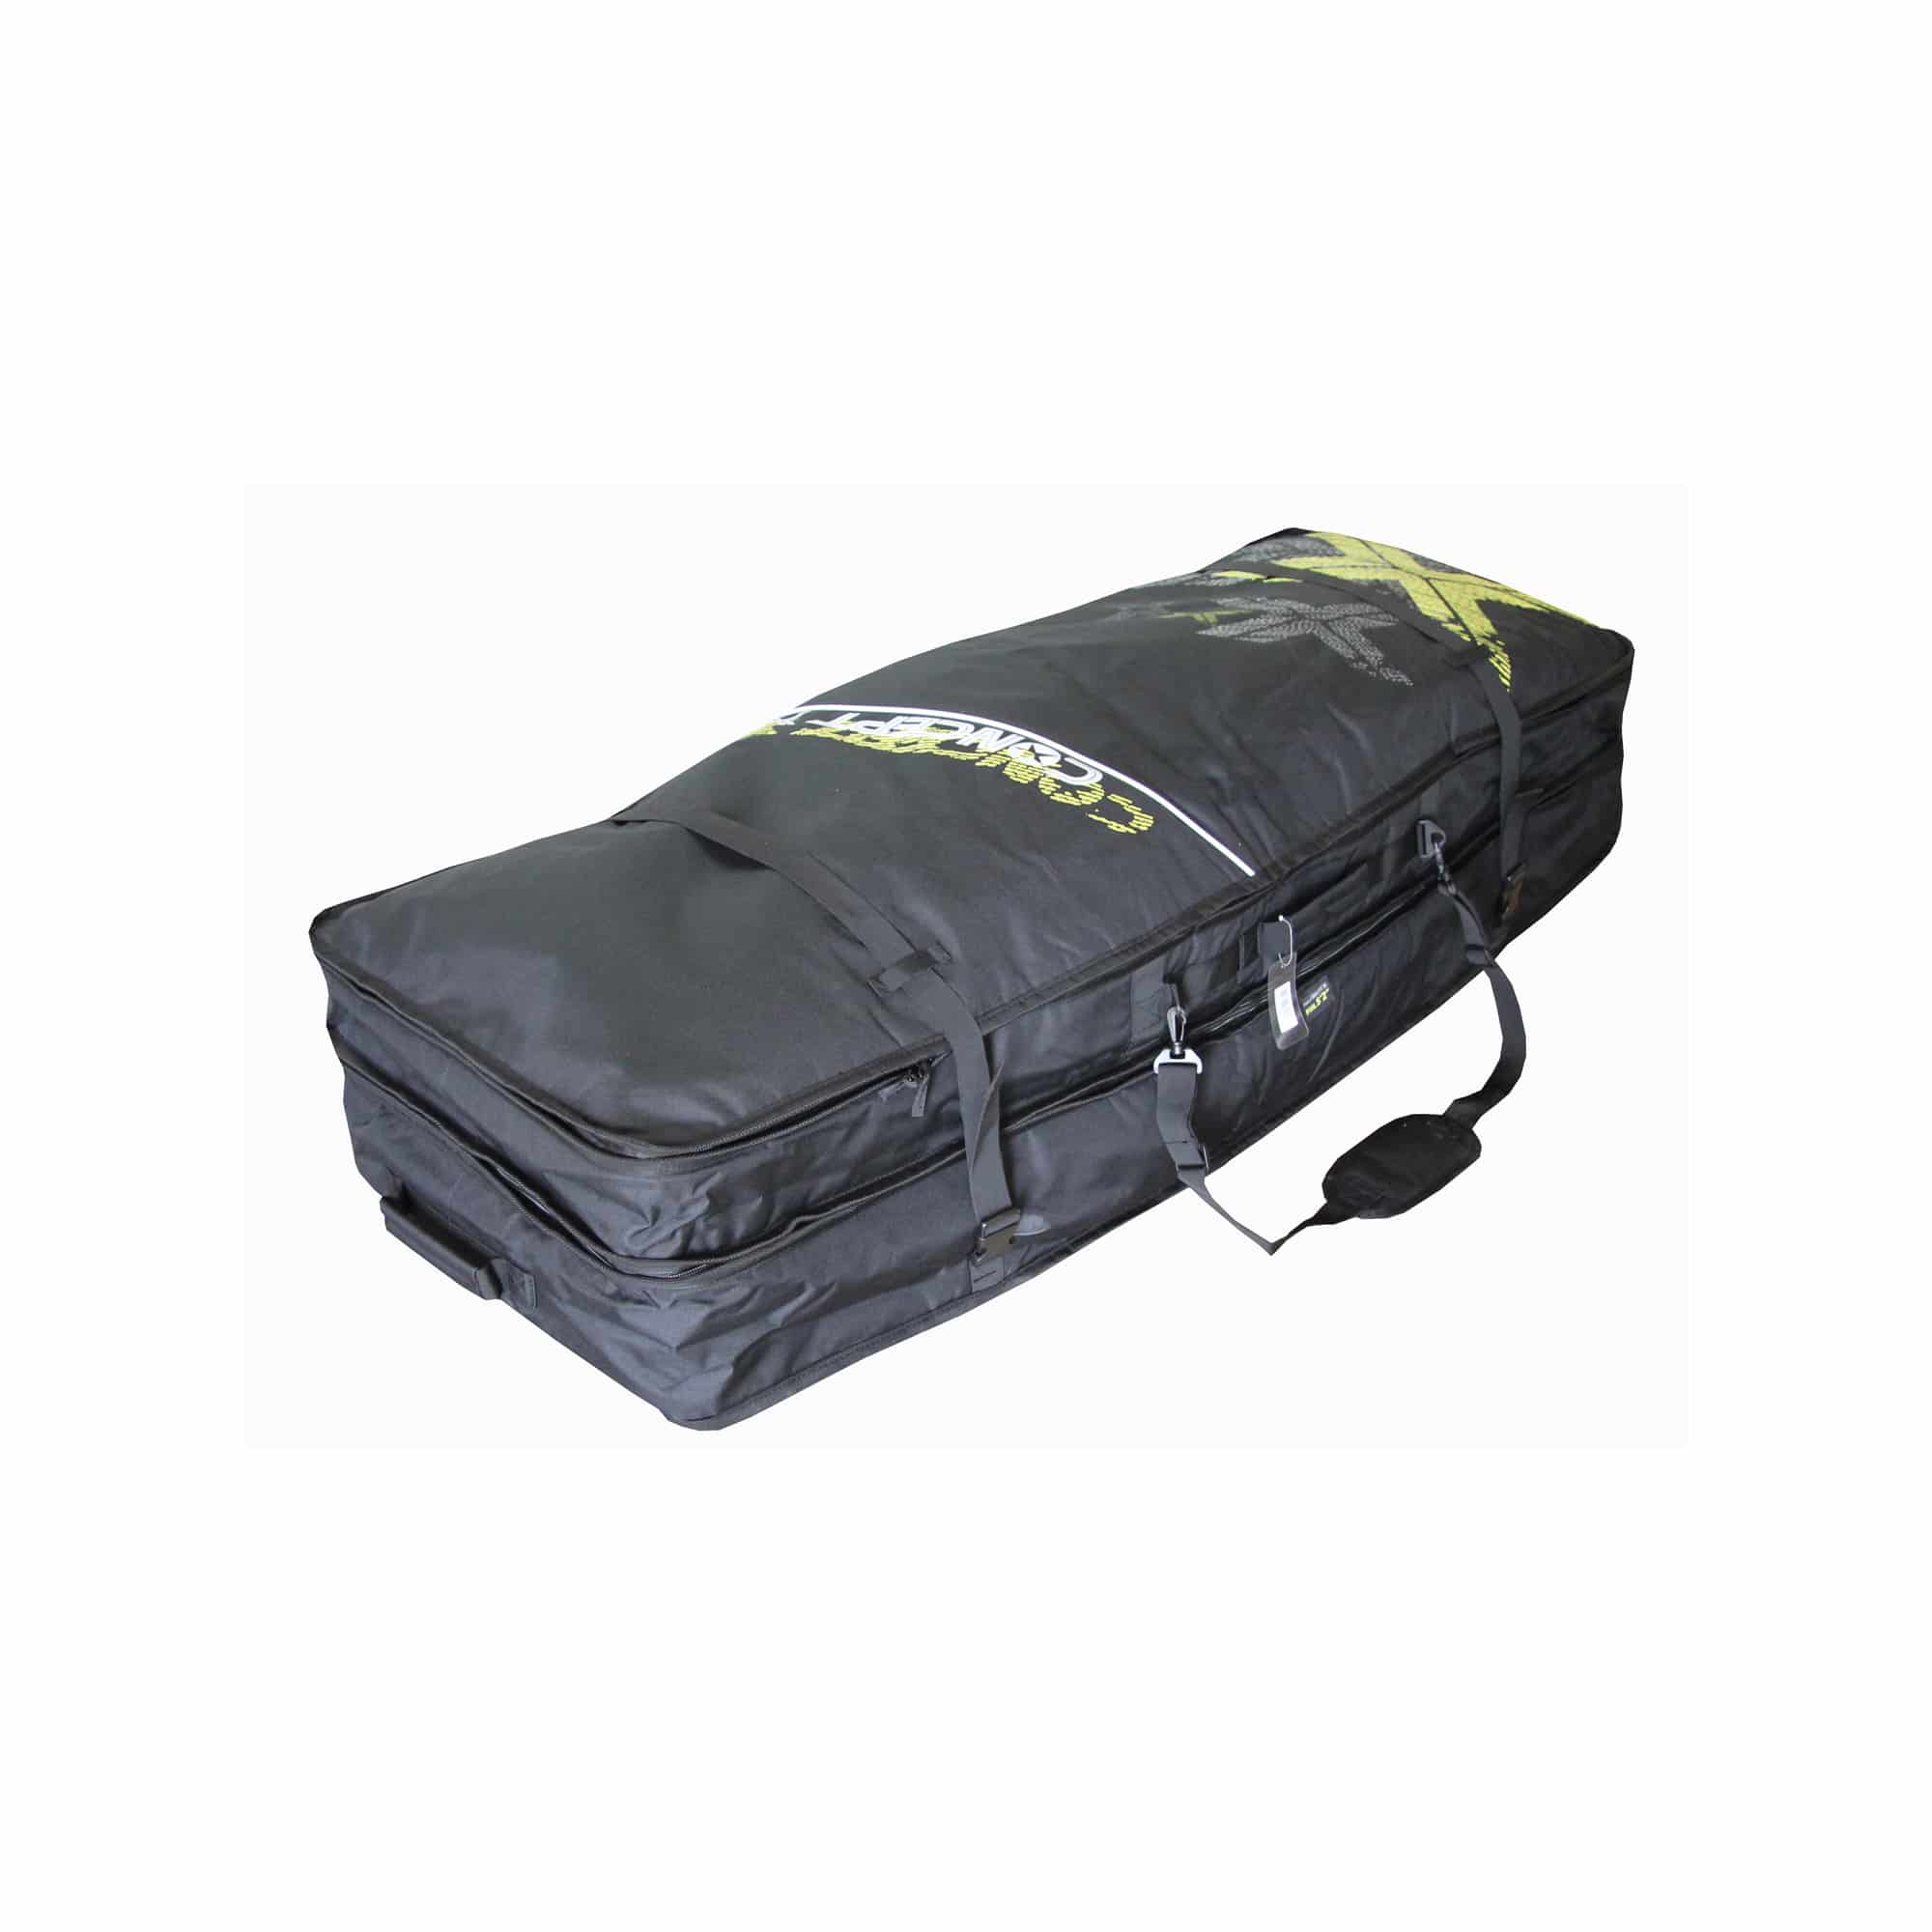 Concept X Wingfoil Travelbag XT